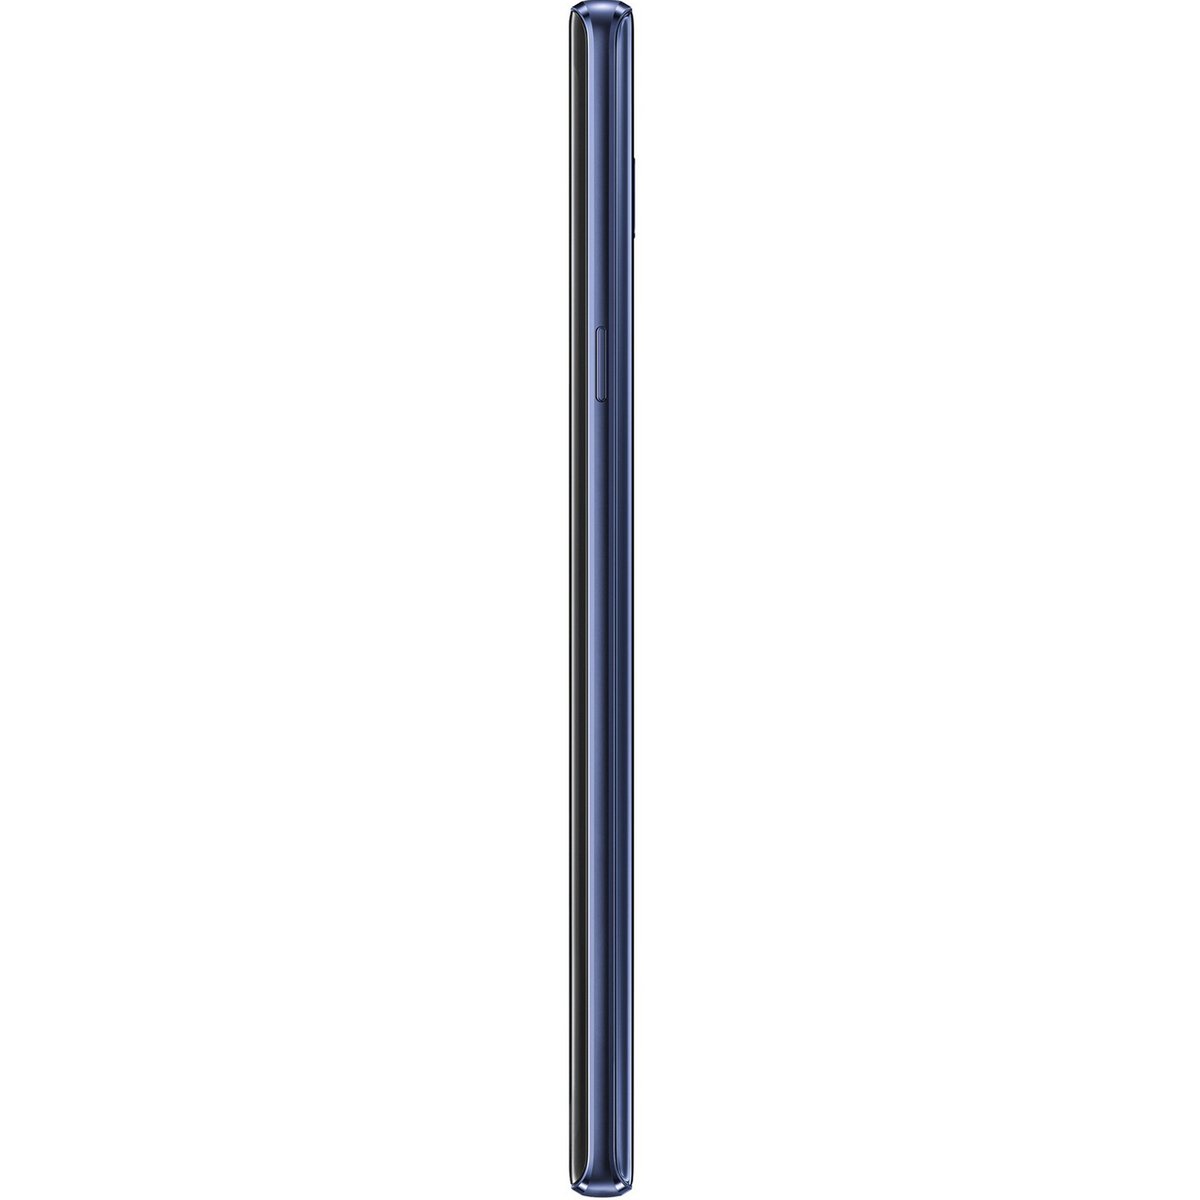 Samsung Galaxy Note9 SMN960F 128GB Blue